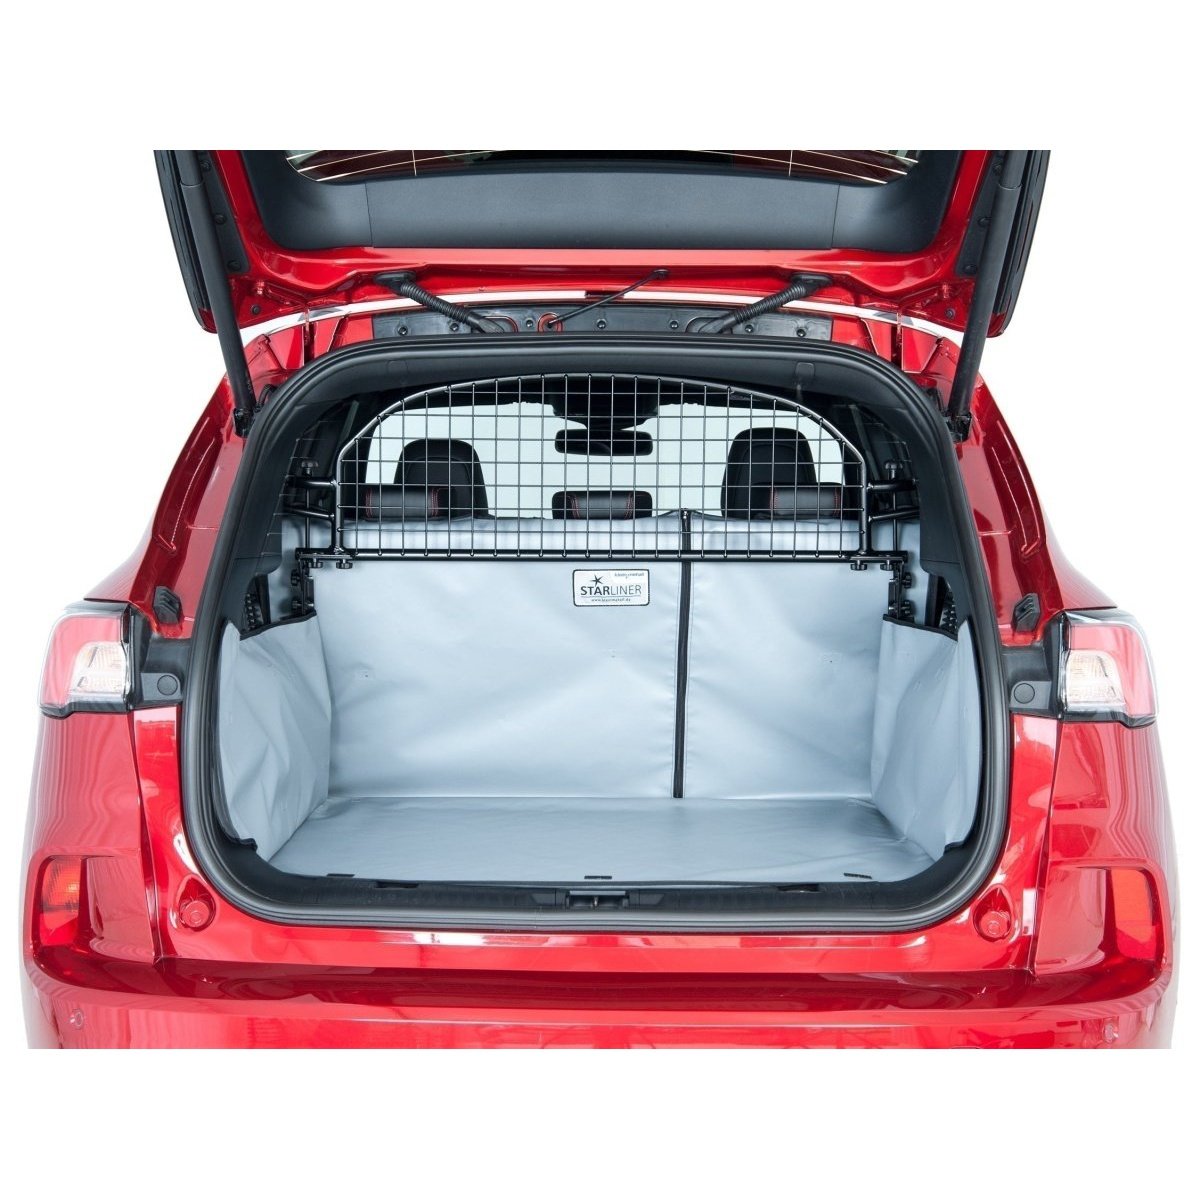 Kleinmetall Kofferraumwanne für Hyundai Kona Elektro Ladeboden eben grau tierxxl-de